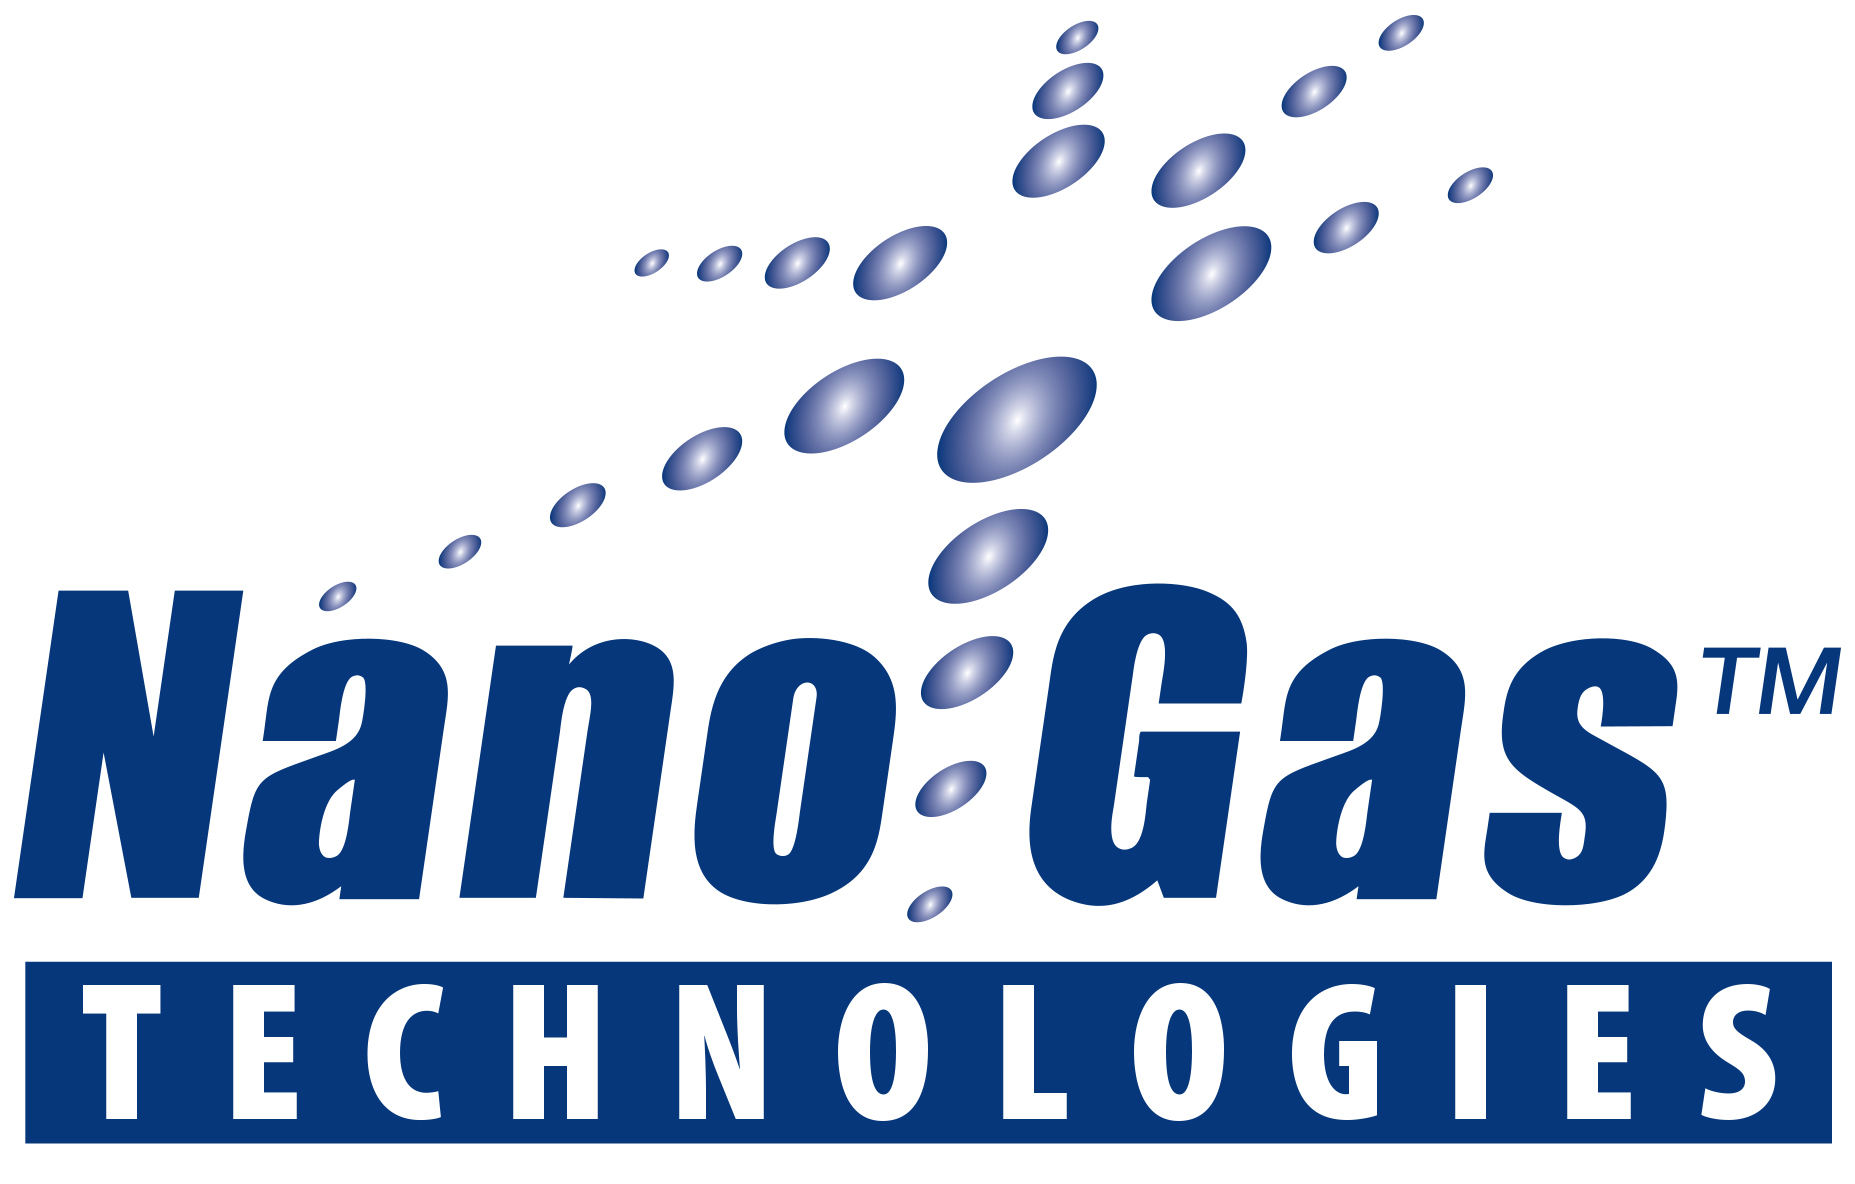 Nano Gas nanobubbles